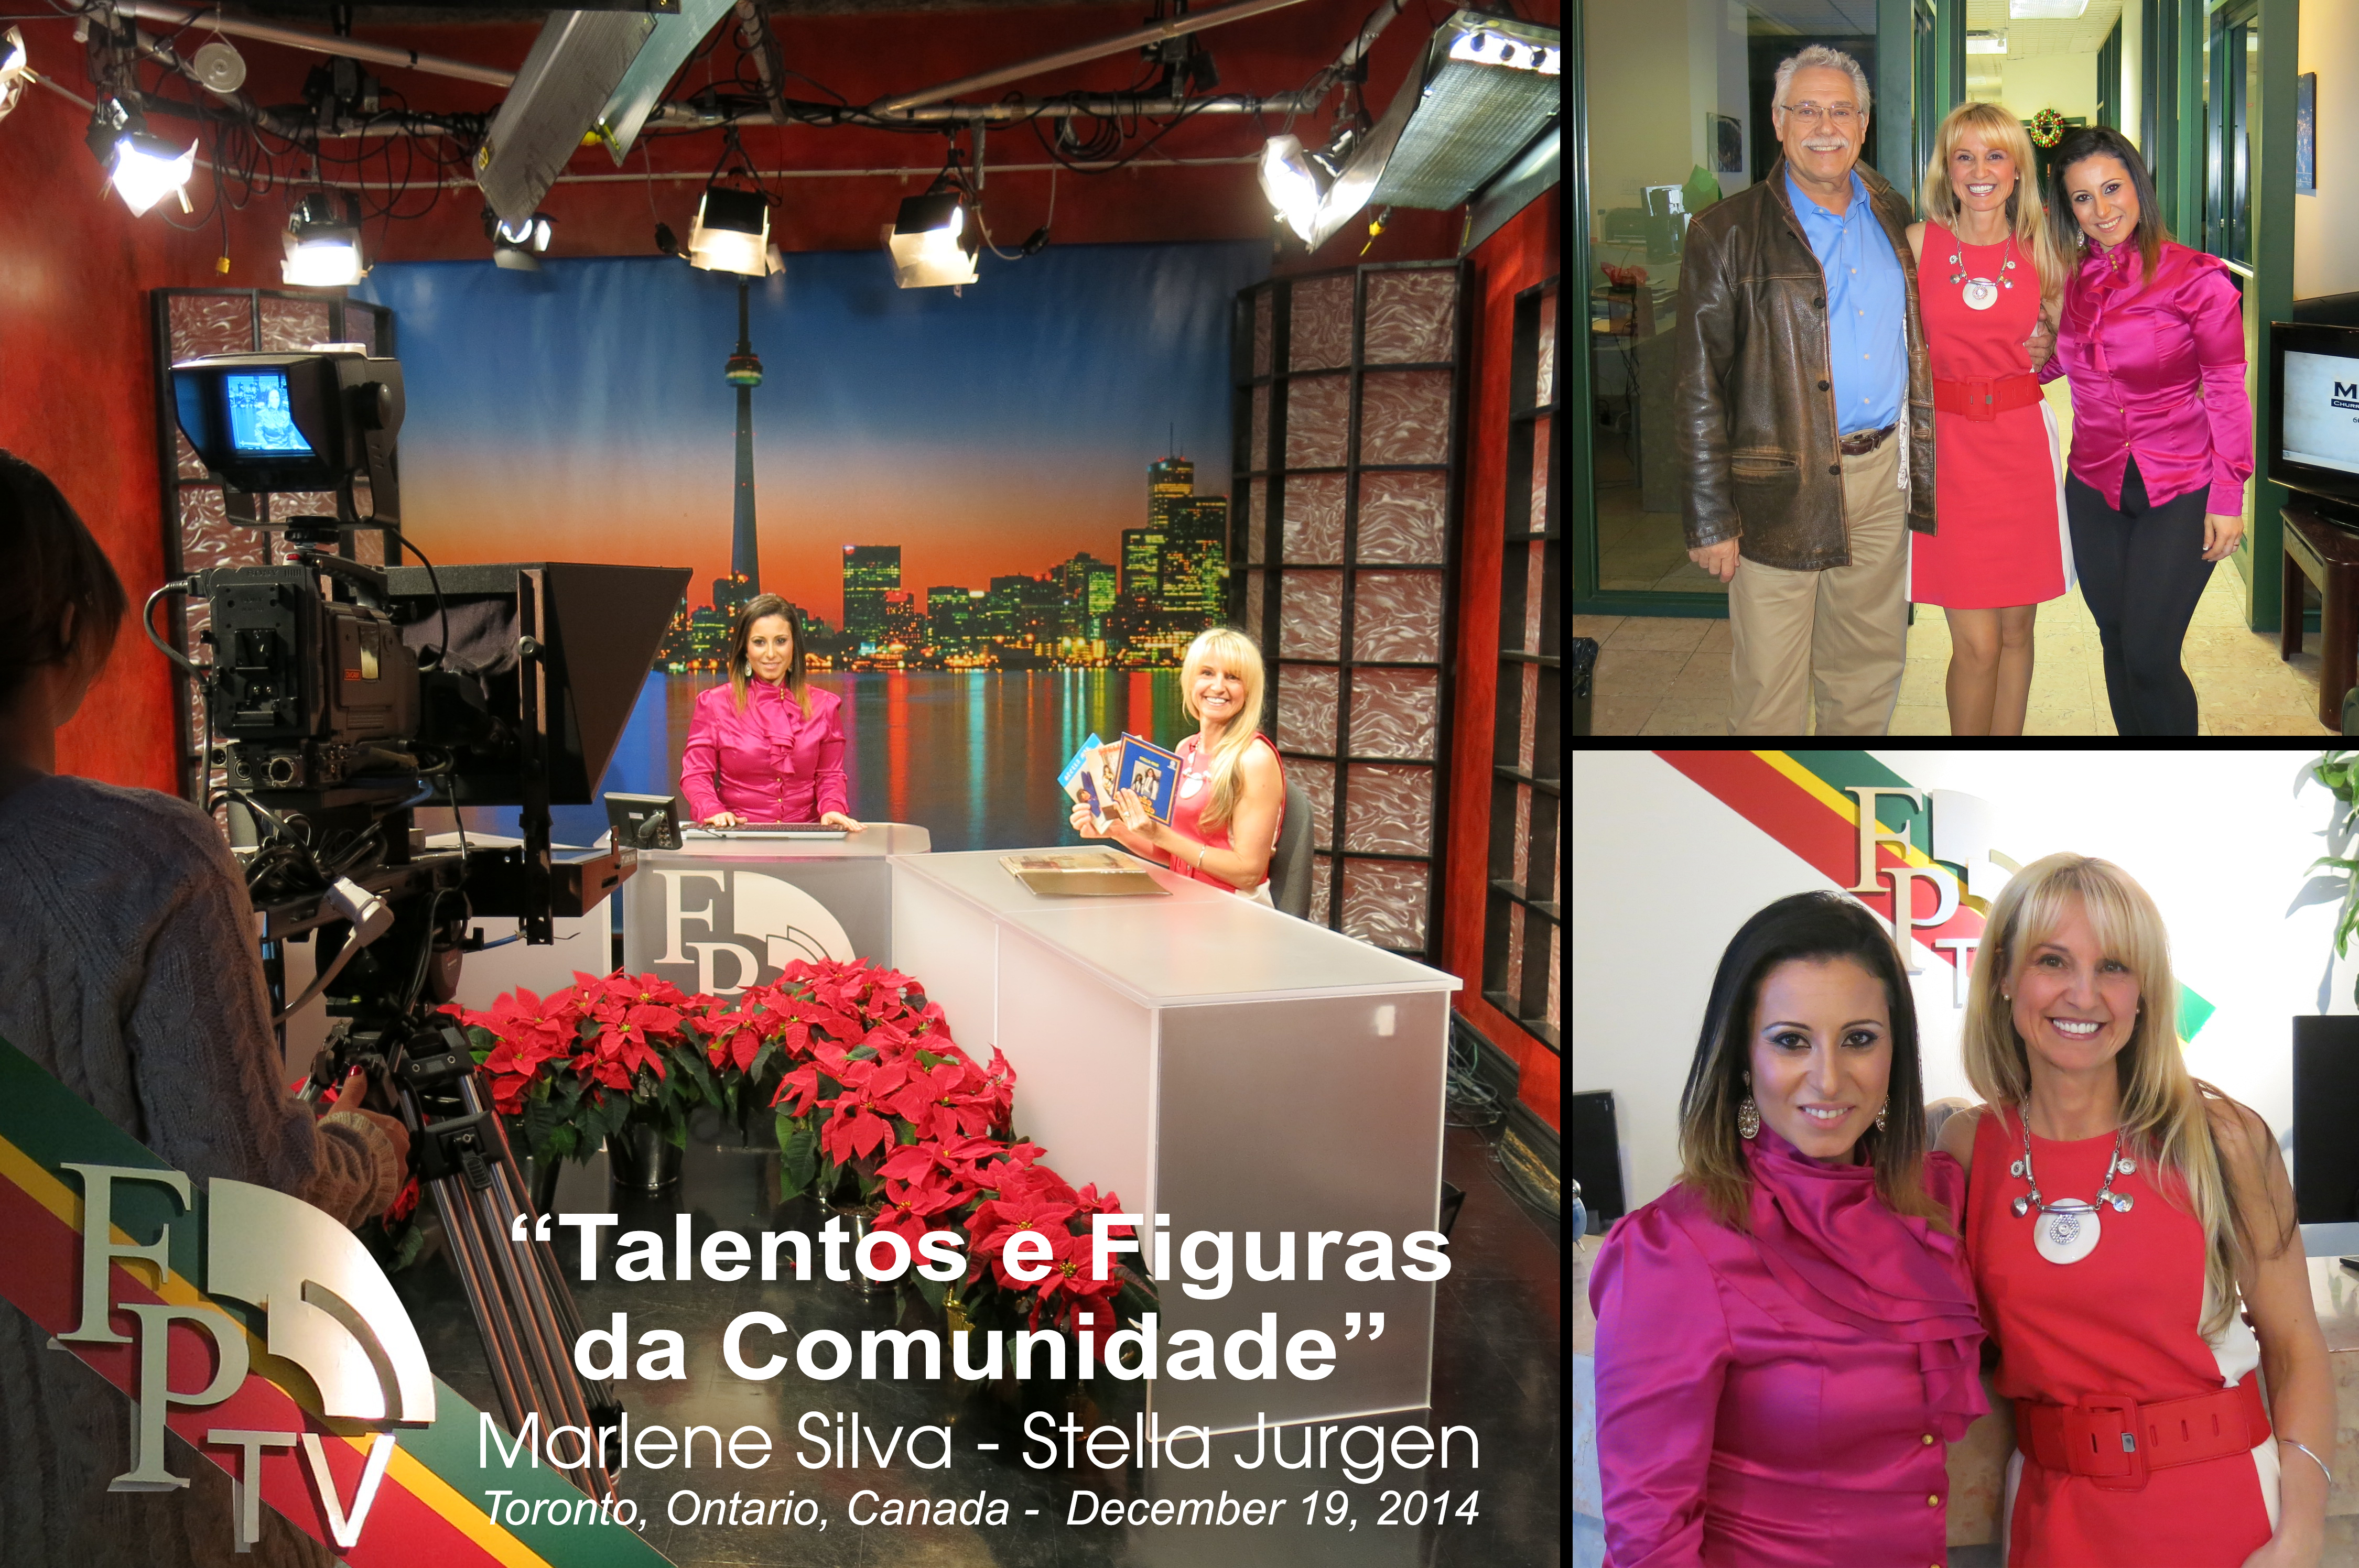 Marlene Silva interviewing Stella Jurgen for "Talentos e Figuras da Comunidade" FP-TV CIRV-TV, December 19, 2014